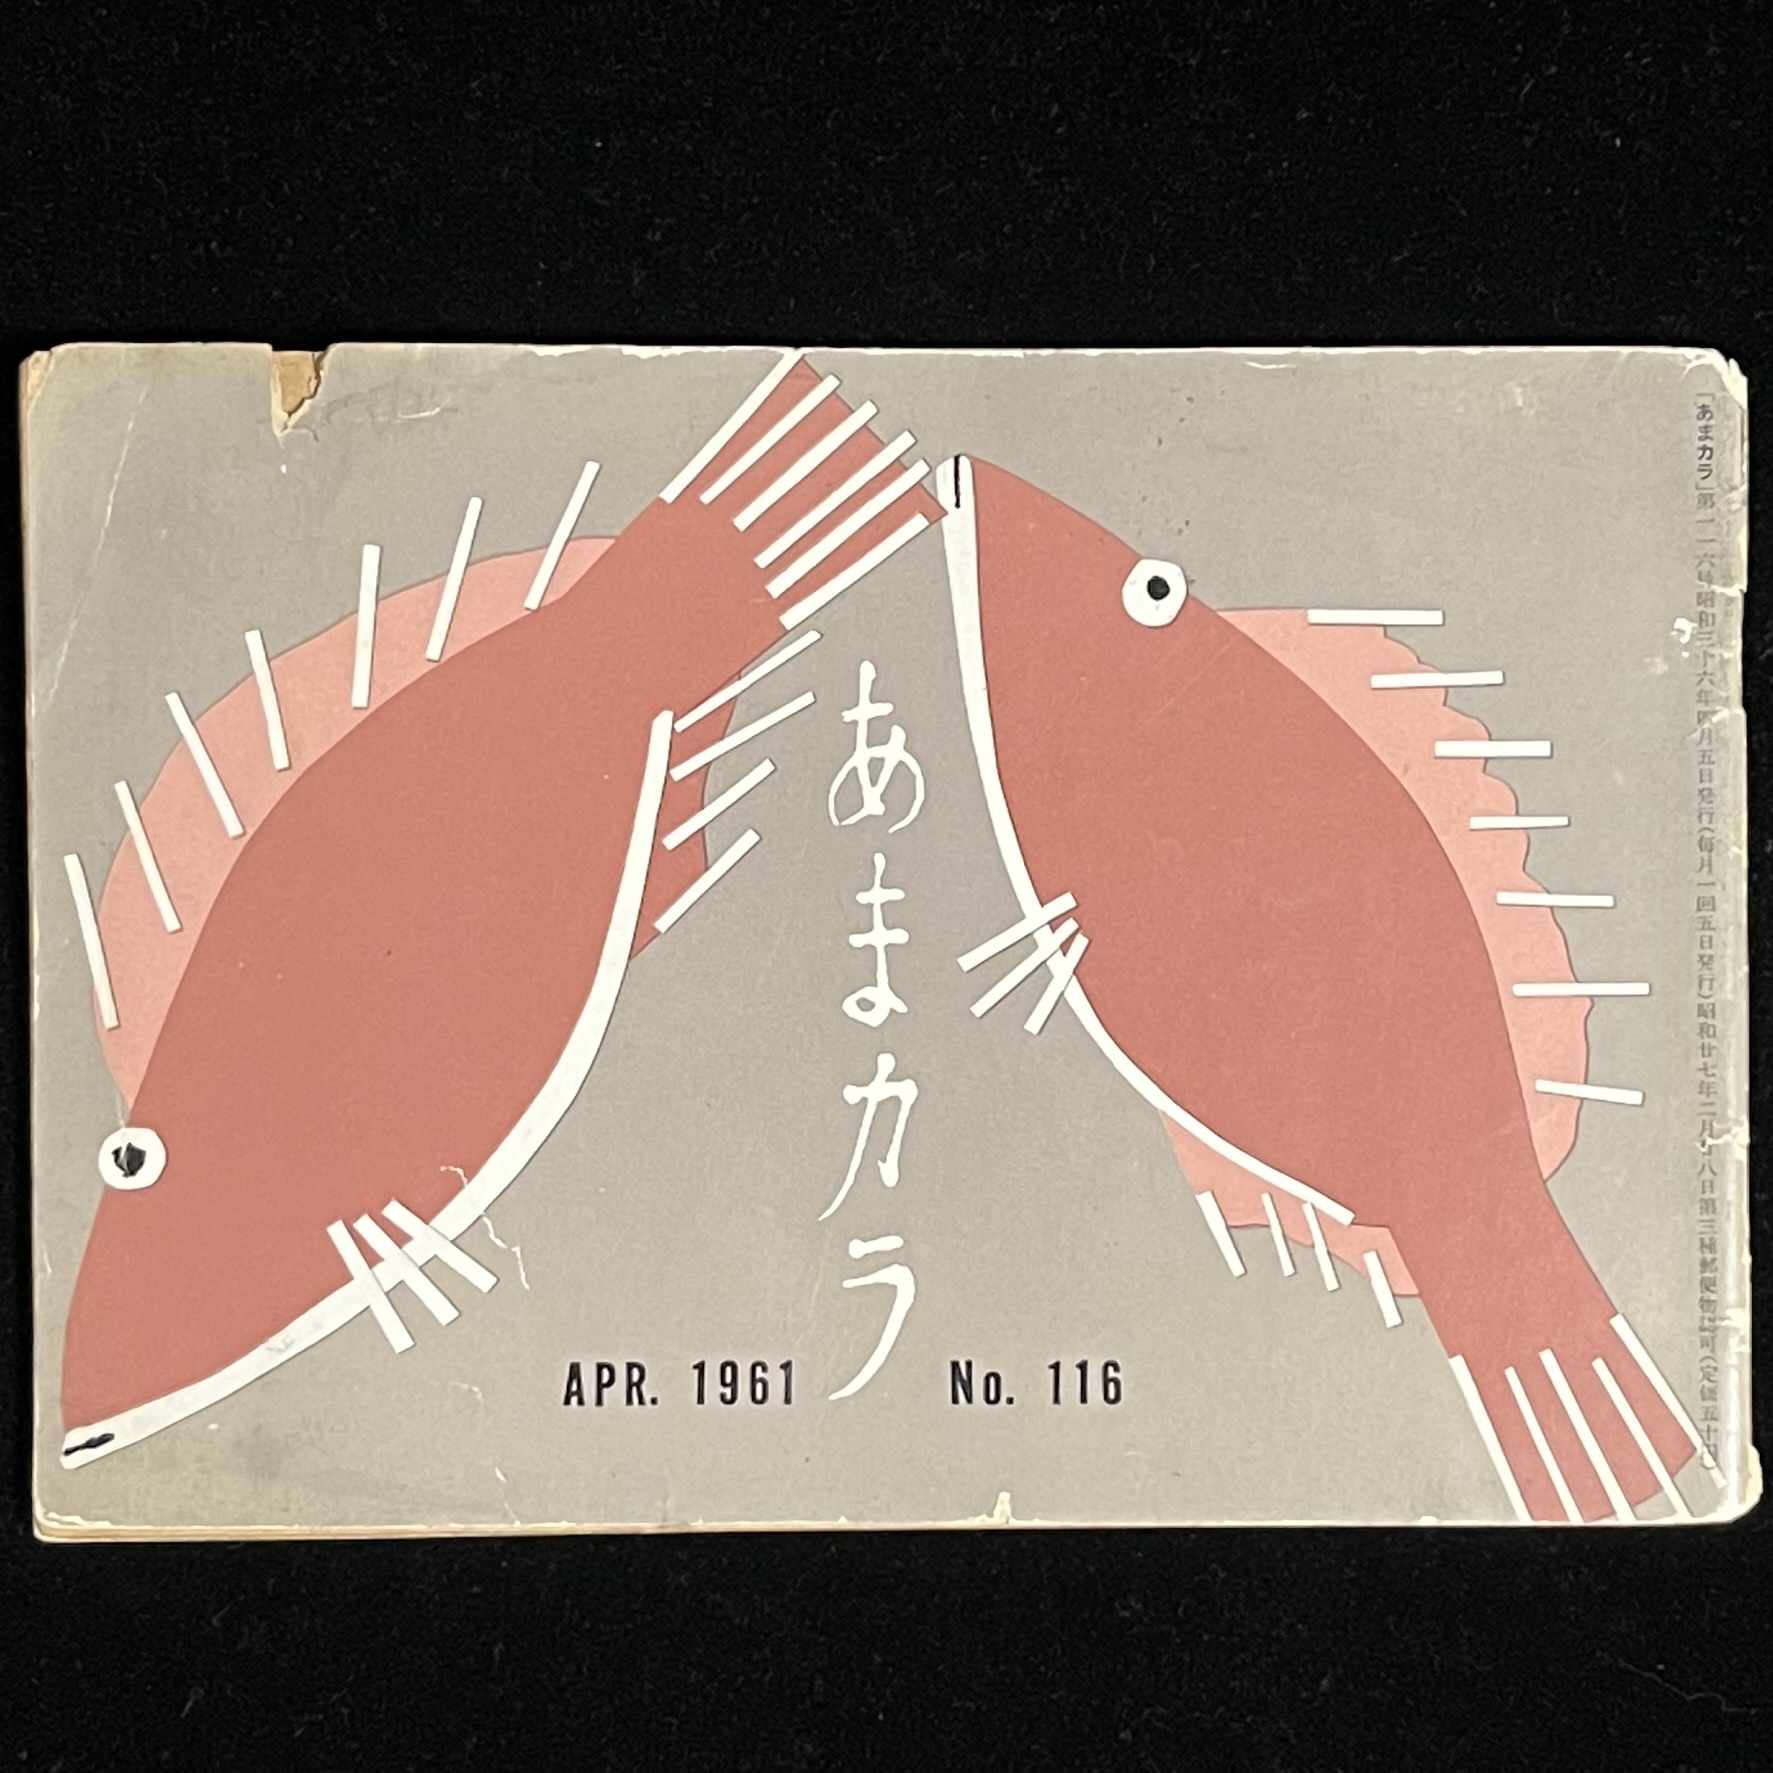 雑誌『あまカラ』の表紙。カレイかヒラメかピンクのイラストの魚が２匹描かれている。